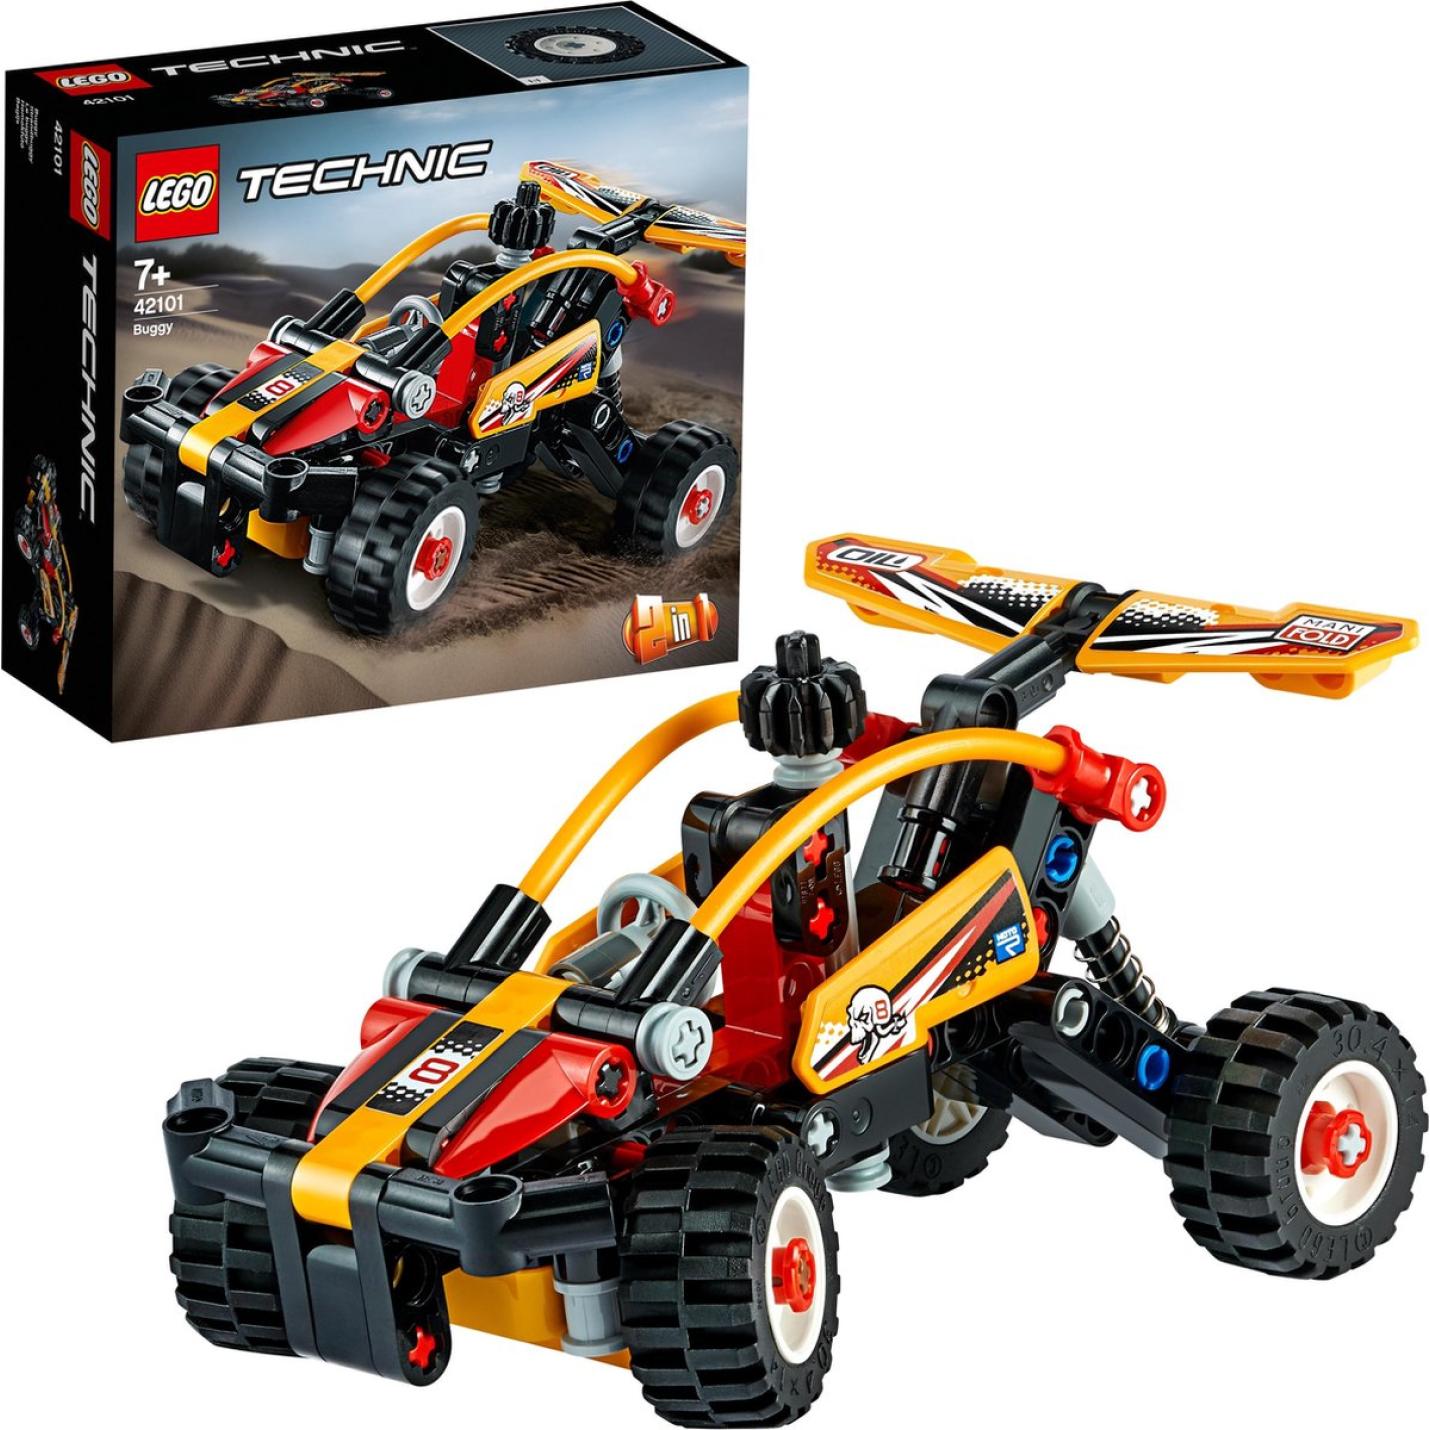 LEGO Technic Buggy - 42101 9